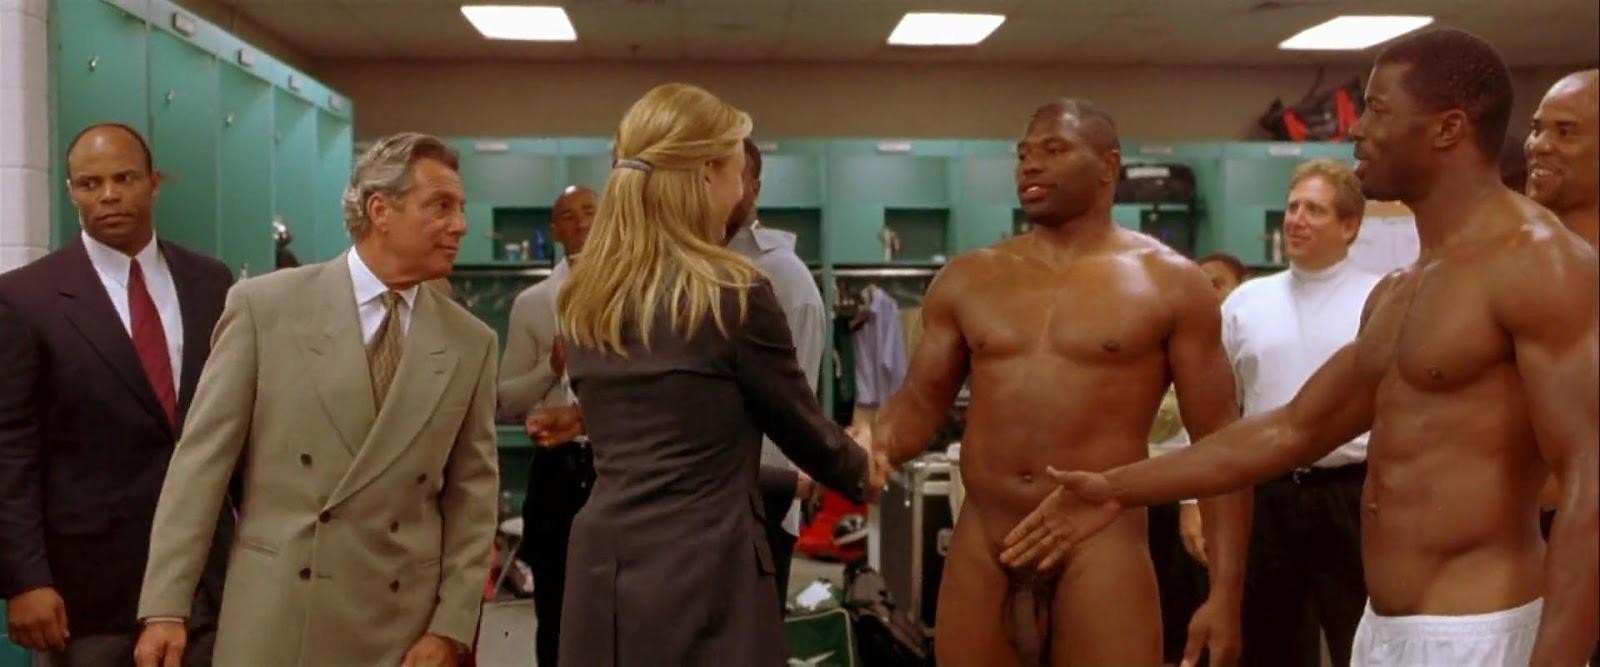 John C. Clark e Jamie Foxx nudi in "Ogni maledetta domenica" (199...